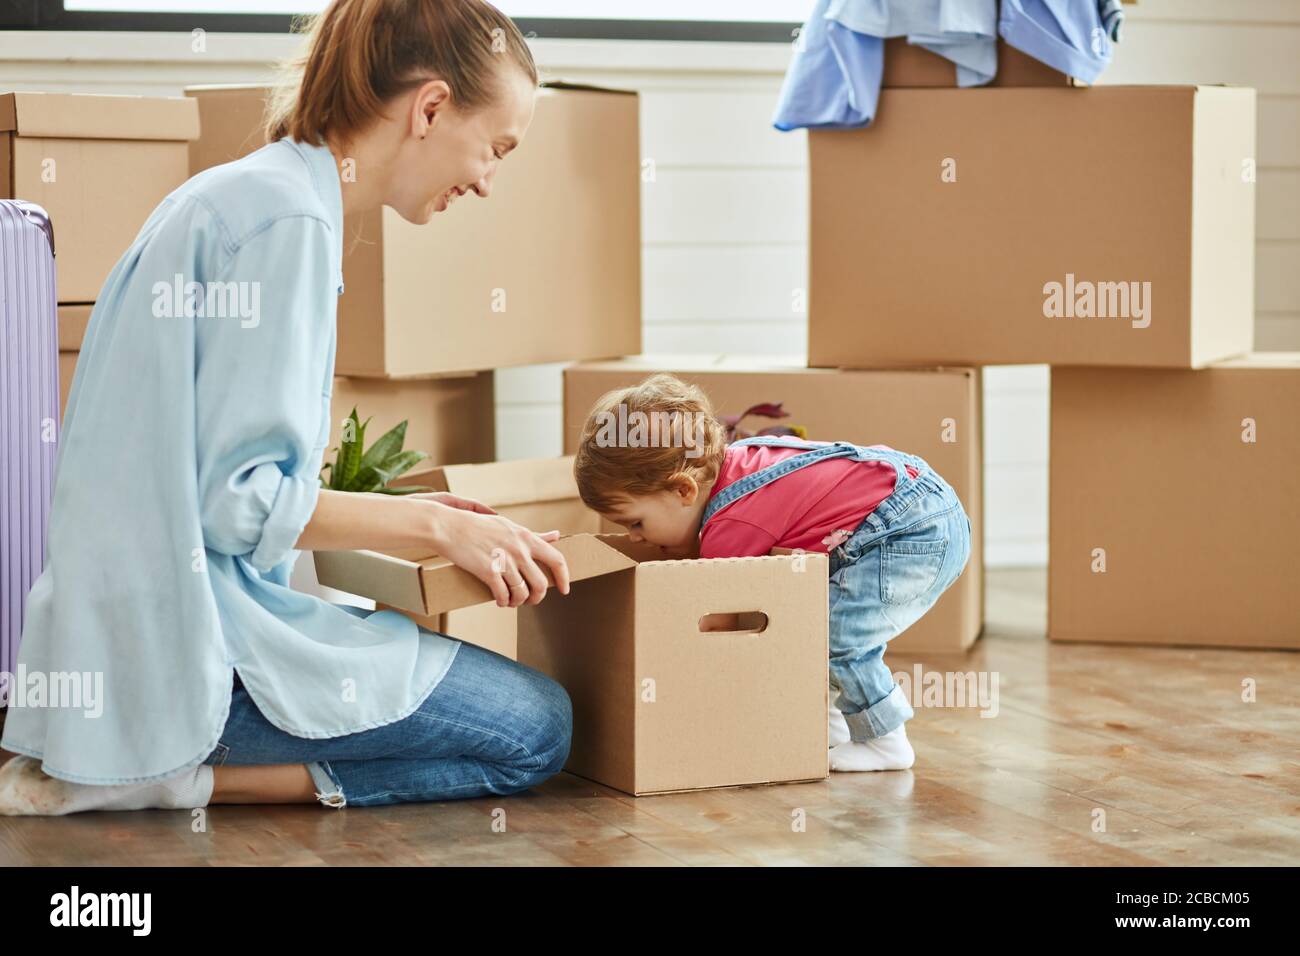 Kid tragen Denim Overall und blonde Frau tragen blaues Hemd, Jeans und weiße Socken Lächeln und spielen mit Box. Bewegliche Felder im Hintergrund Stockfoto